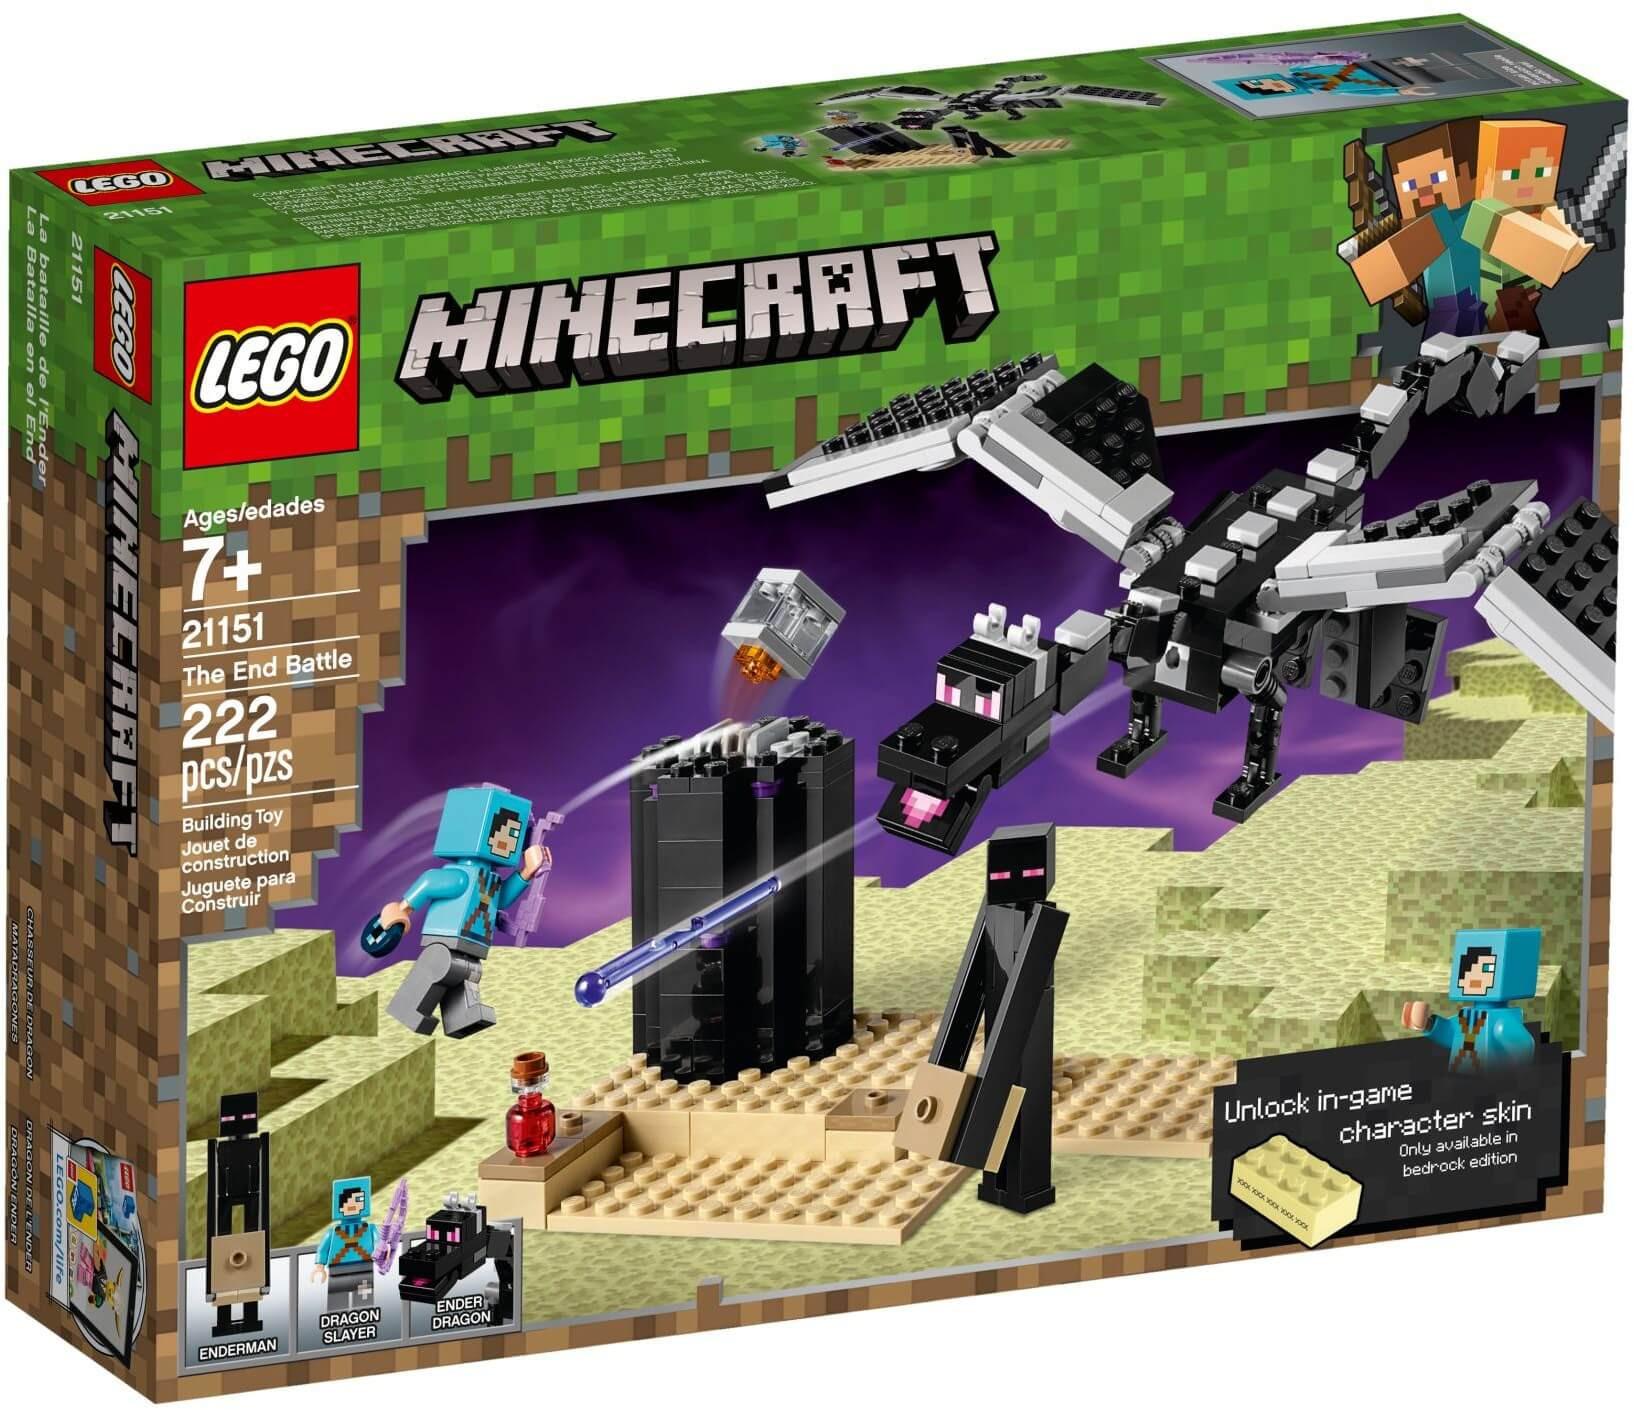 Ghé thăm ngay Ender Lego Minecraft để tìm hiểu về sản phẩm độc đáo này! Với chất liệu nhựa cao cấp và thiết kế đẹp mắt, Ender Lego Minecraft sẽ làm hài lòng các fan của trò chơi Minecraft. Lắp ráp theo hướng dẫn, hoặc sáng tạo riêng với những chi tiết hấp dẫn. Hãy xem ngay hình ảnh sản phẩm!